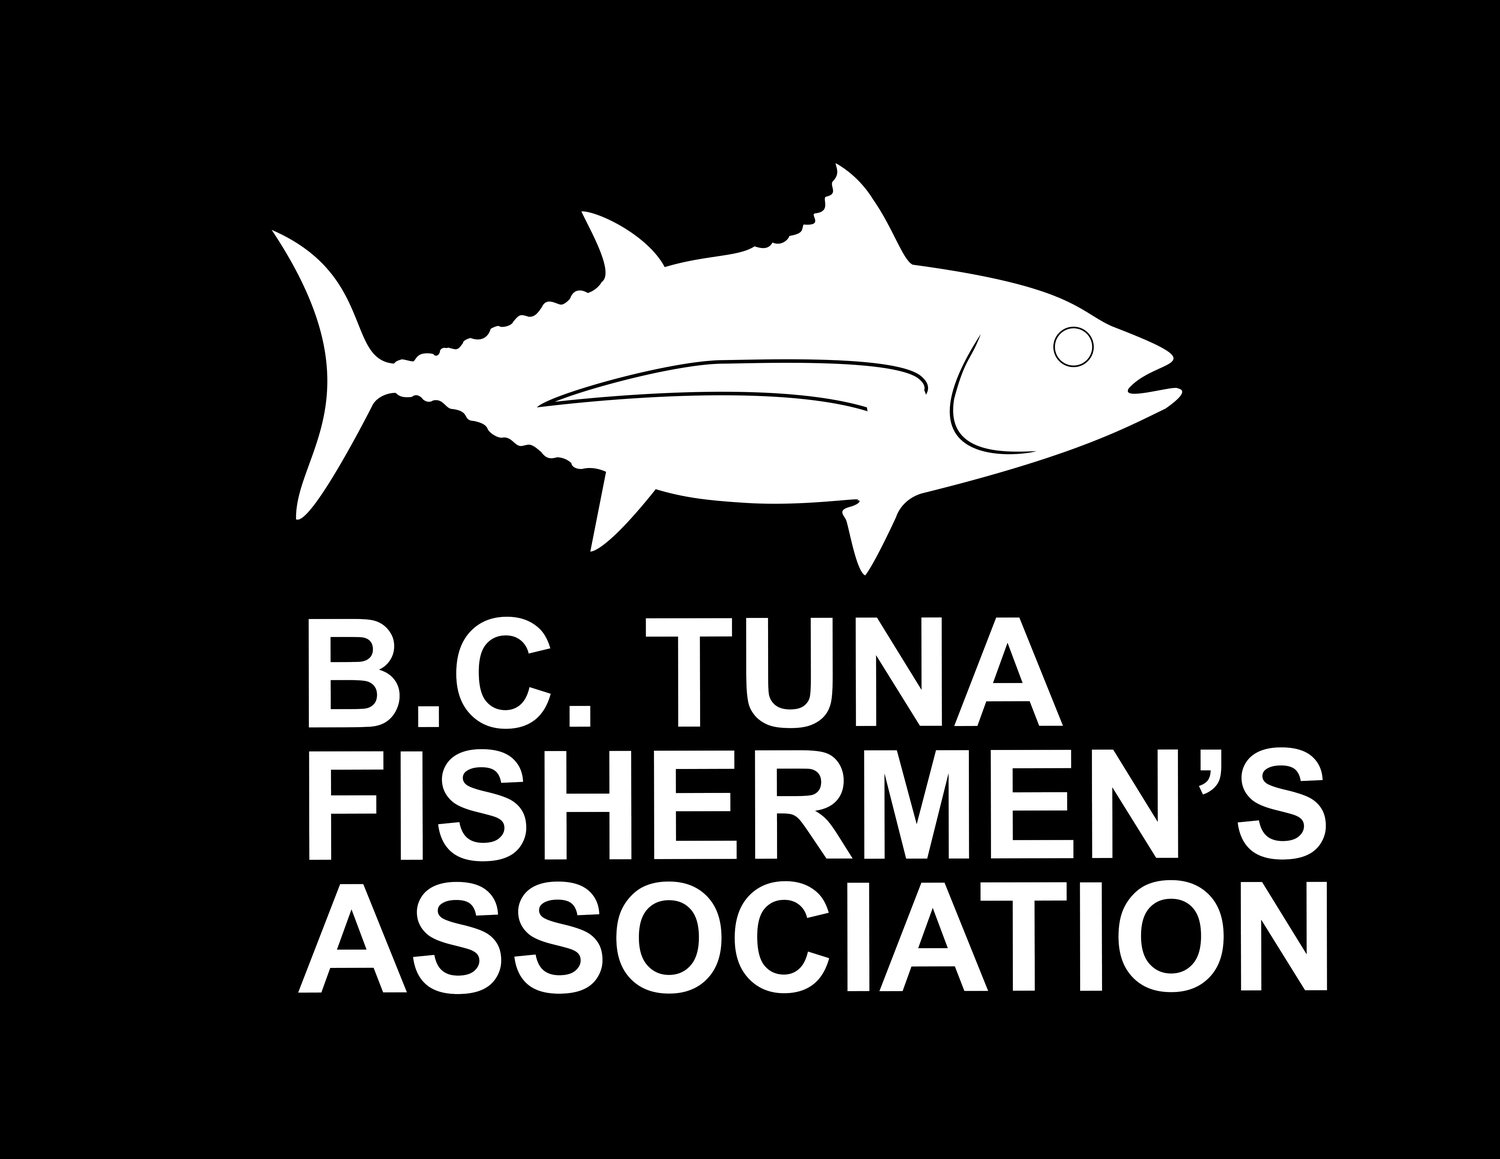 B.C. Tuna Fishermen's Association 